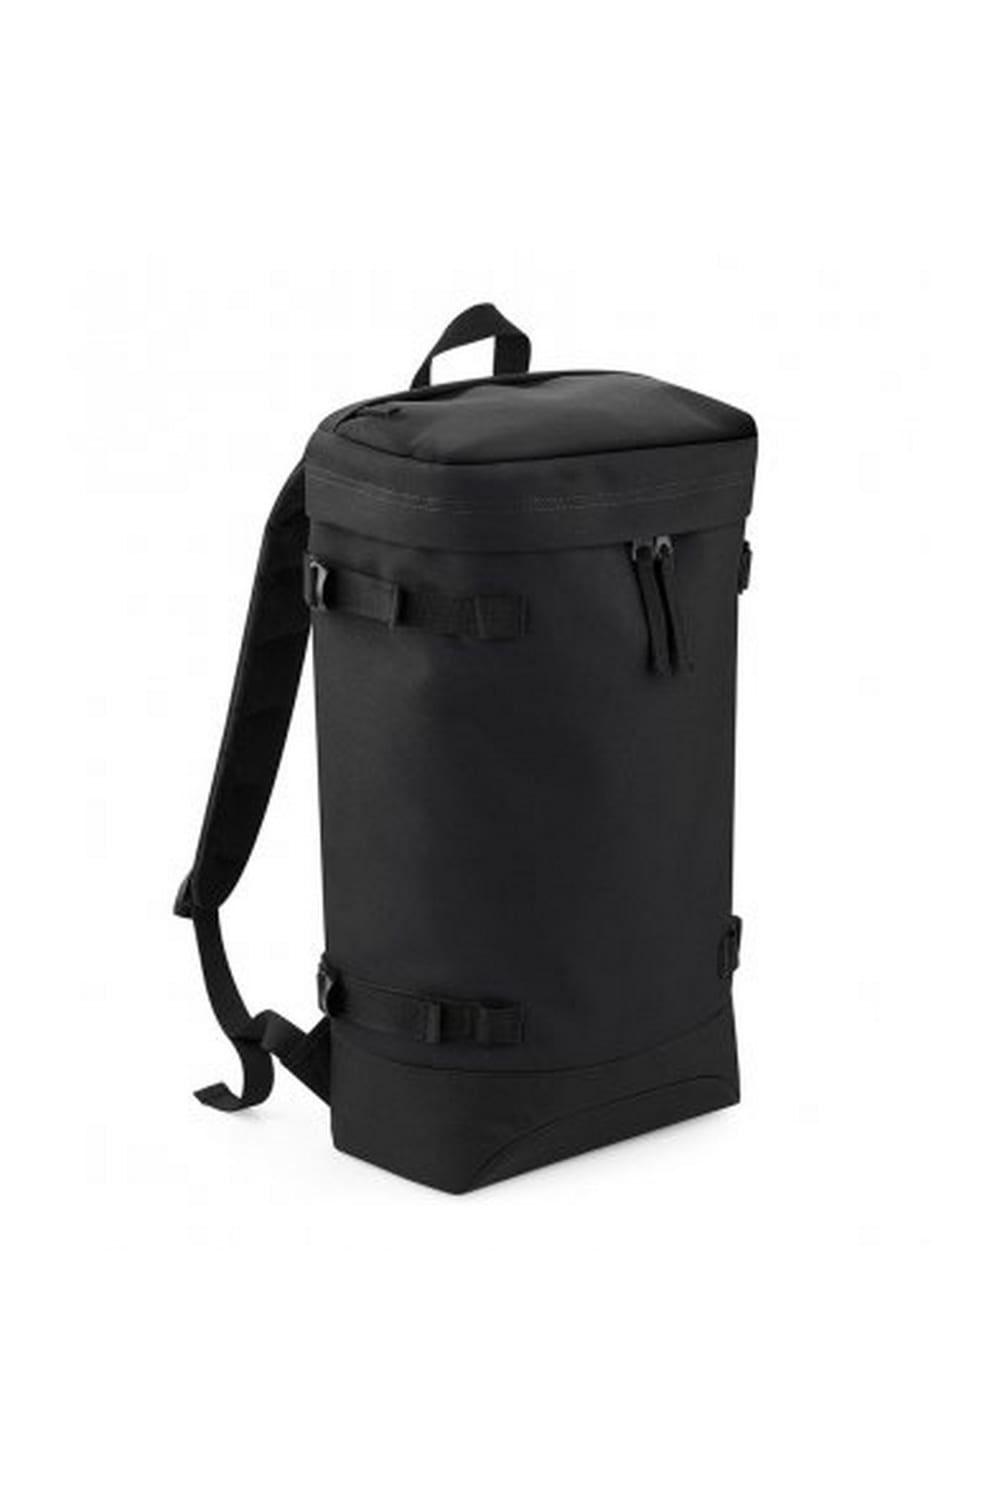 Urban Toploader Backpack - Black